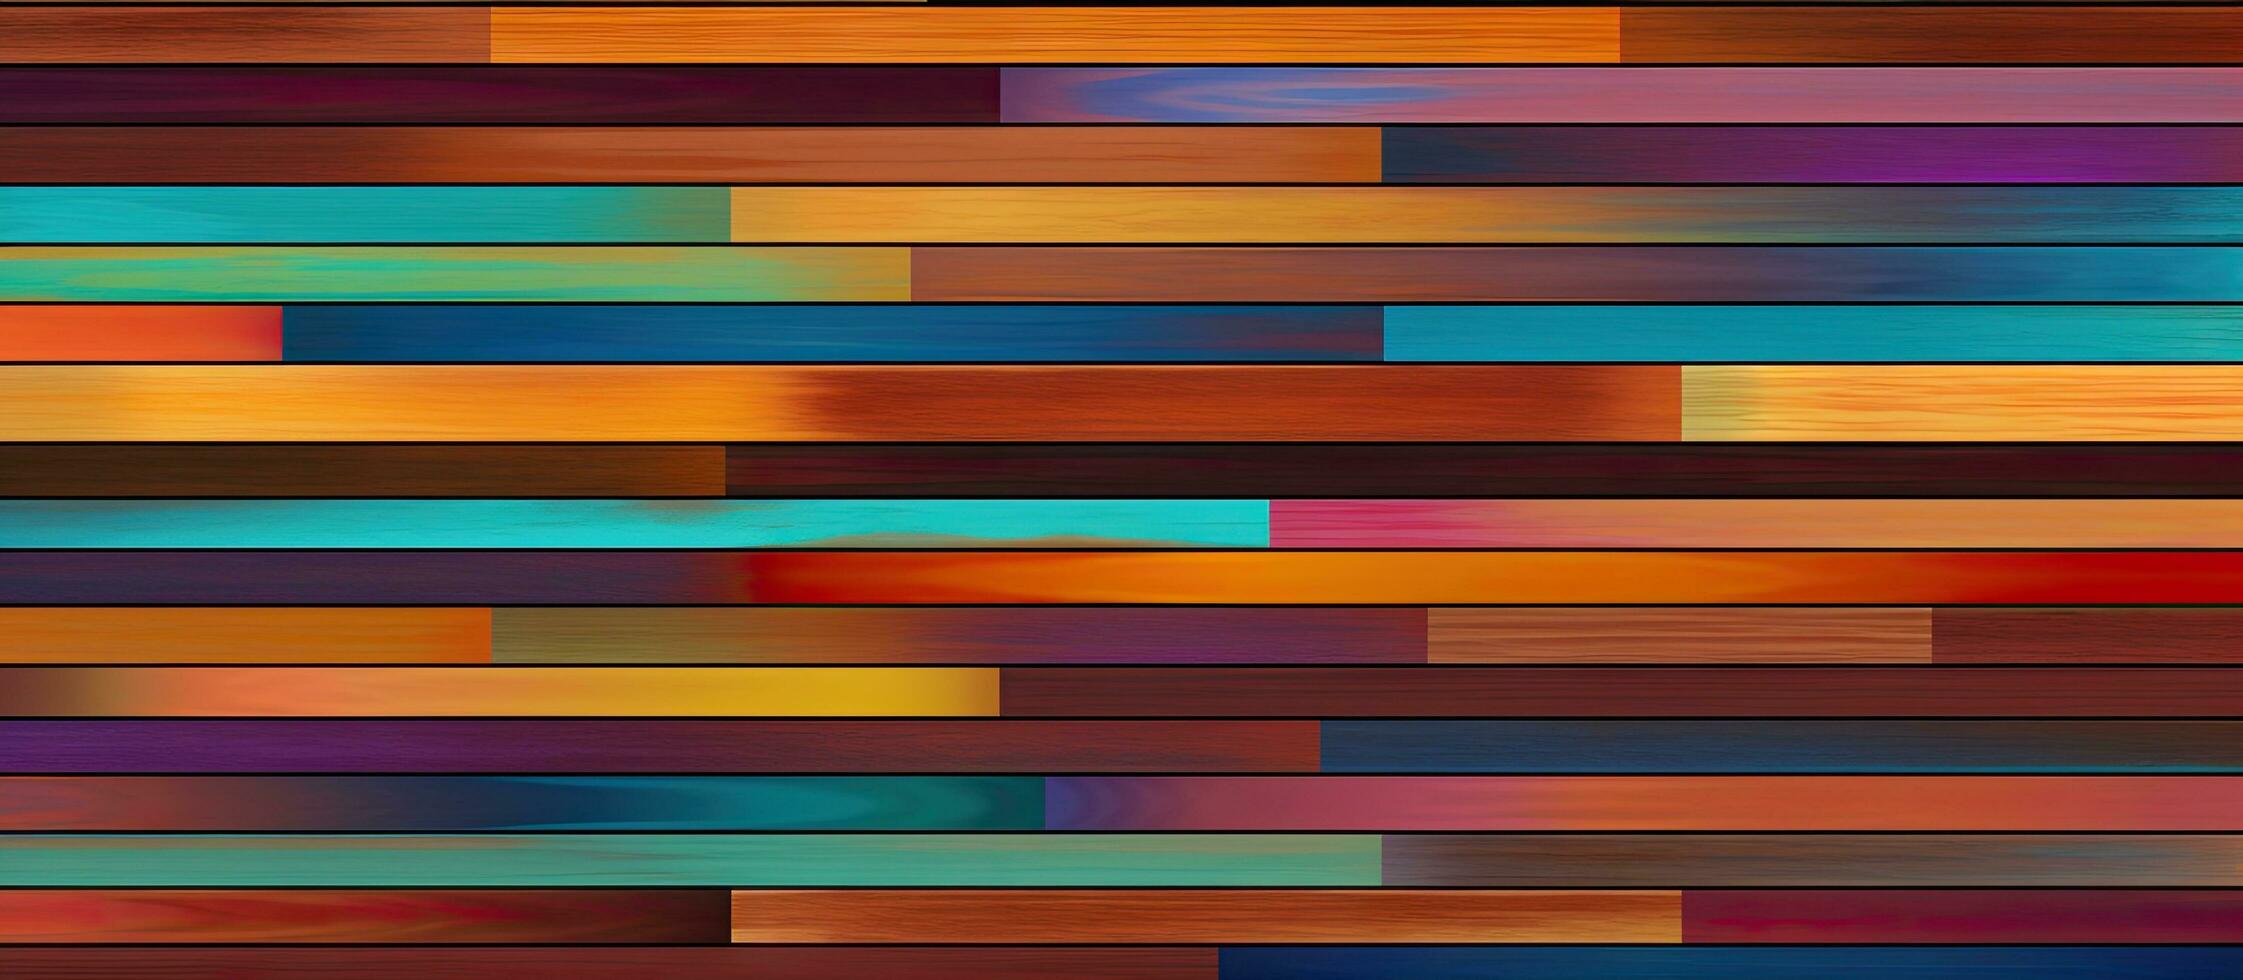 olika mosaik- mönster i flerfärgad Ränder för Hem dekor Inklusive tapeter mattor och tyger foto